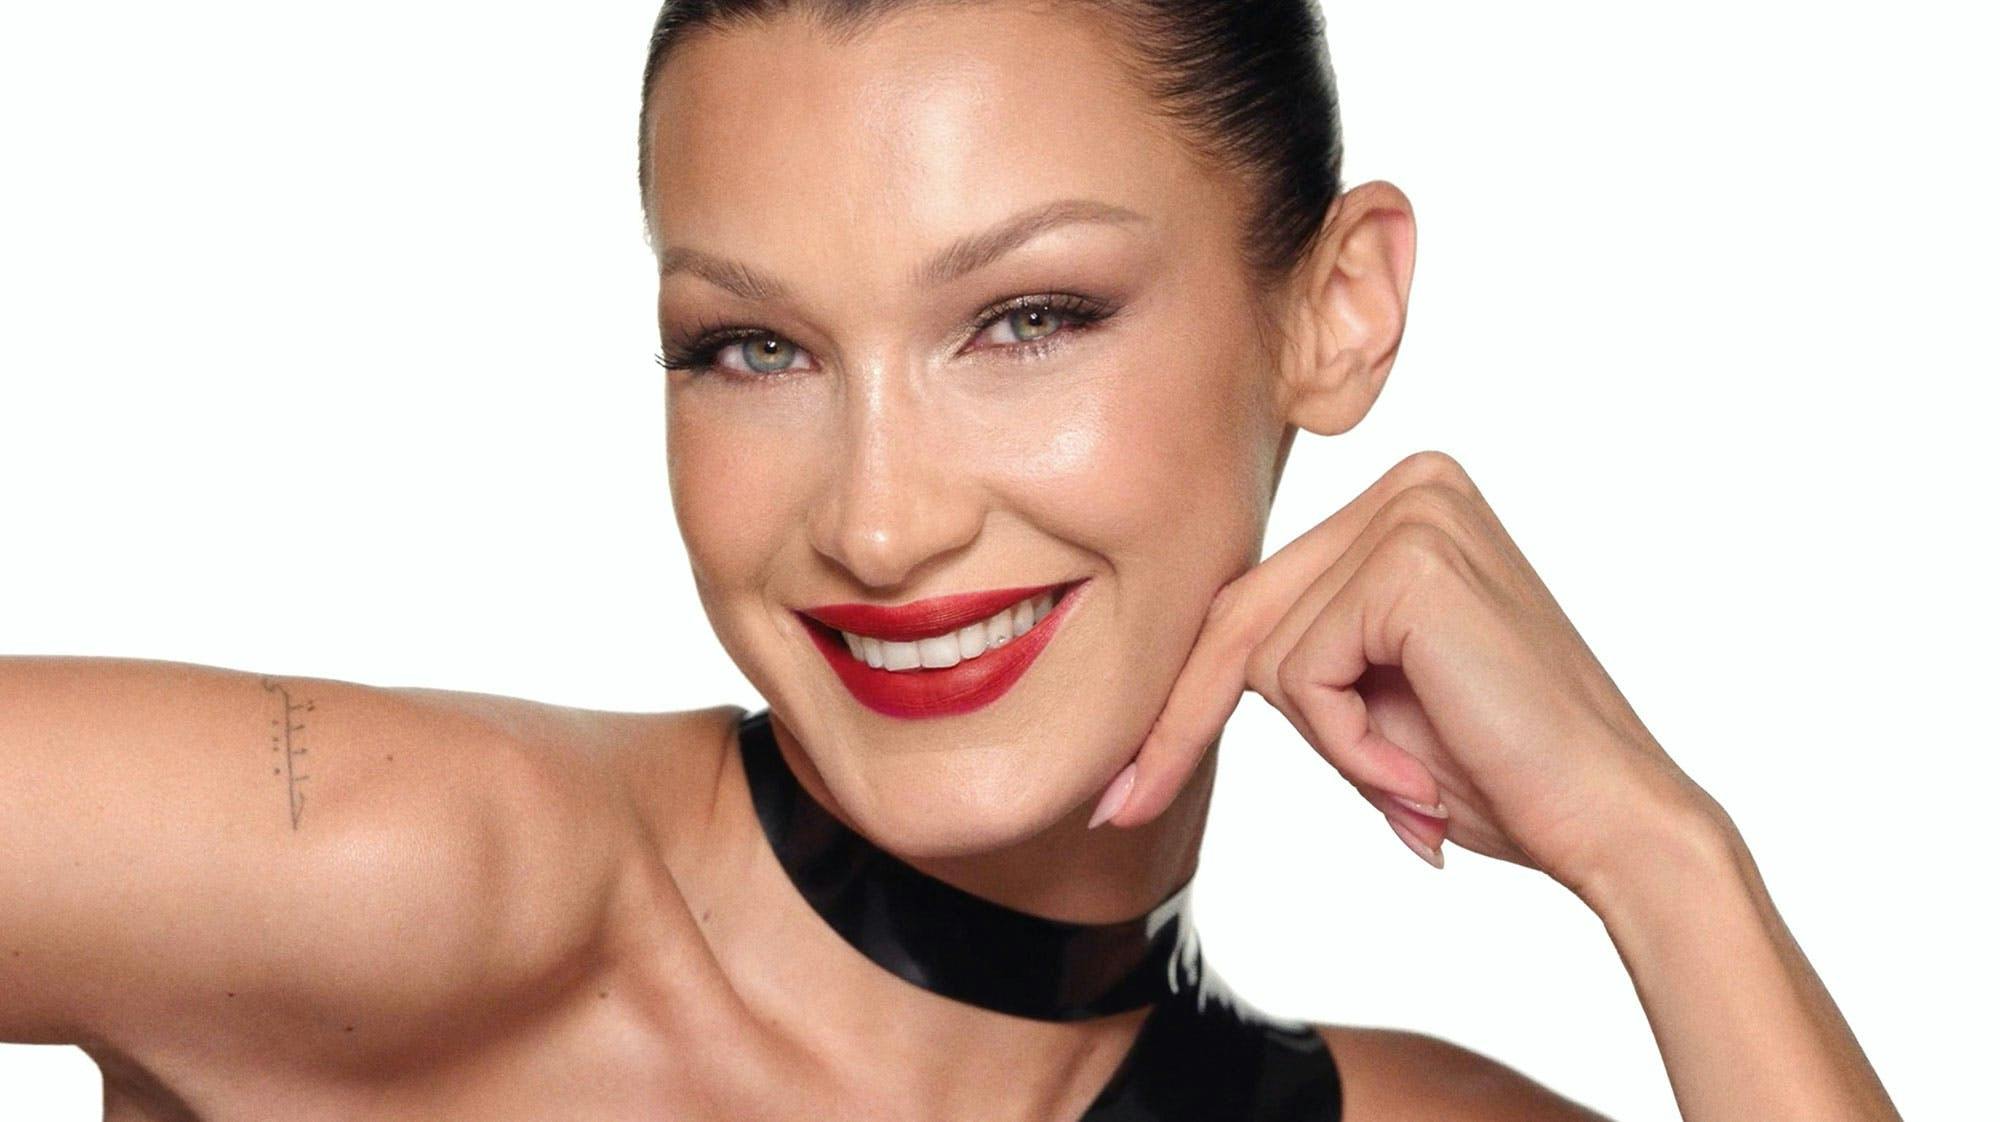 face head person adult female woman smile dimples portrait lipstick